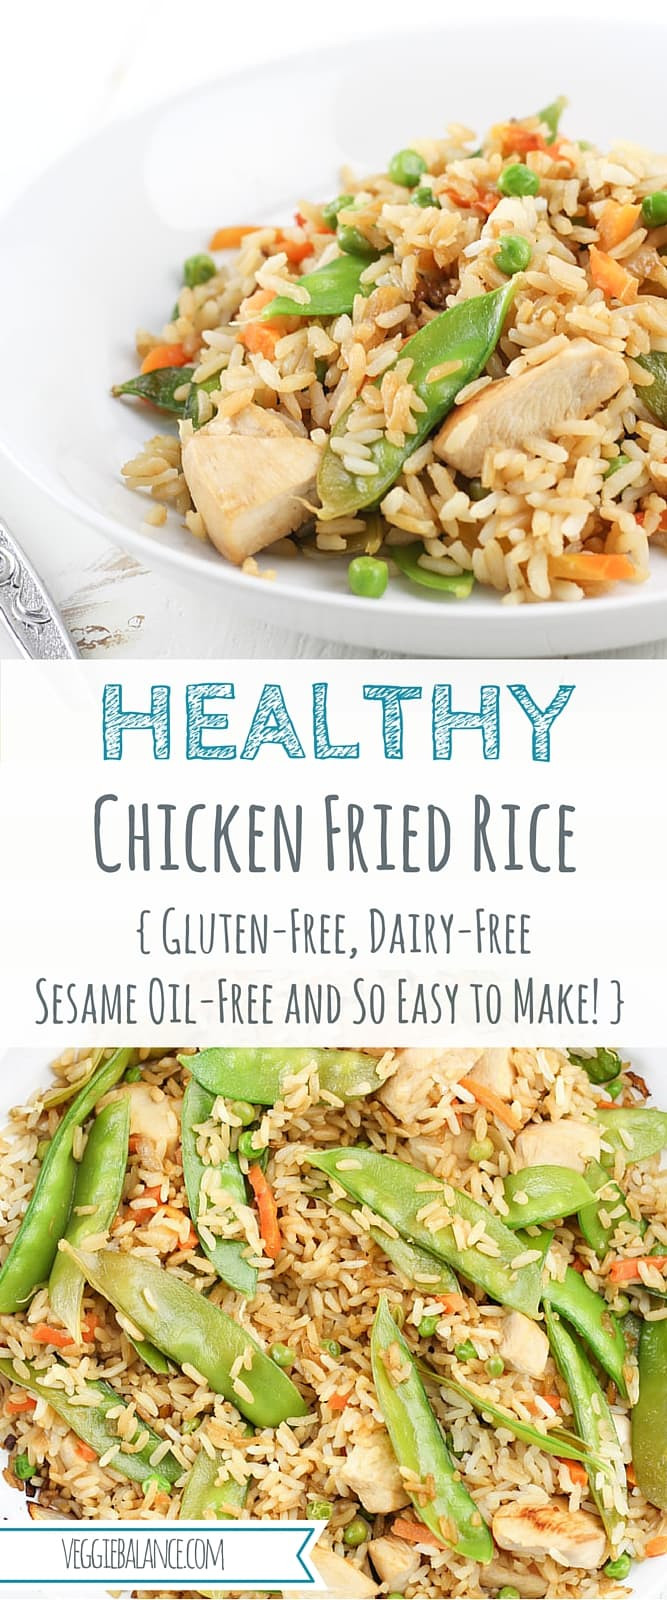 Dairy Free Chicken Recipes
 Chicken Fried Rice Gluten Free Dairy Free Gluten Free